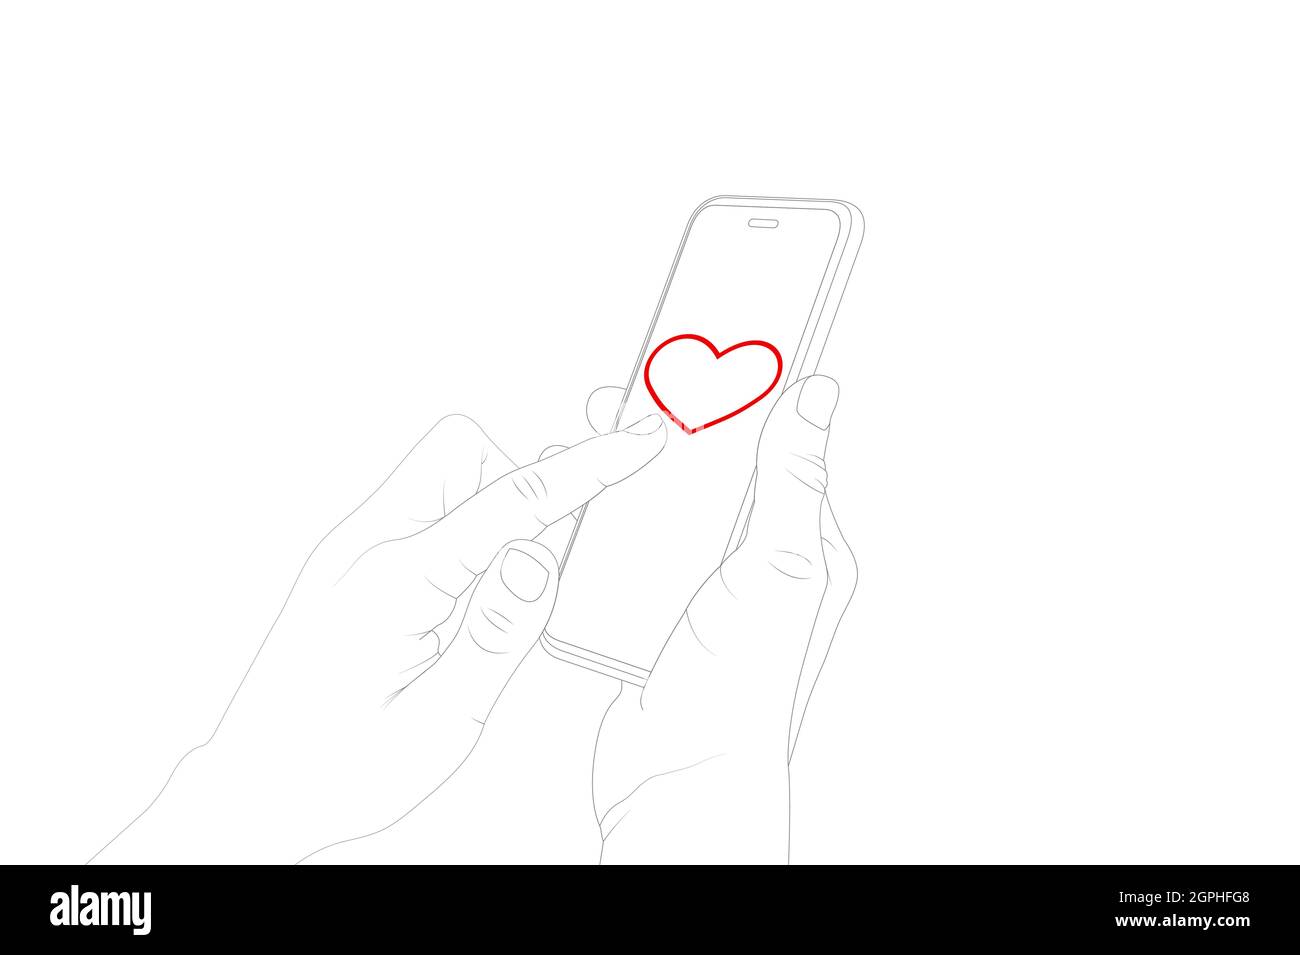 Envoi de coeur emoji avec le téléphone, flirt, symbole de coeur, main de femme envoi d'un message avec le téléphone. Illustration du stock vectoriel Illustration de Vecteur